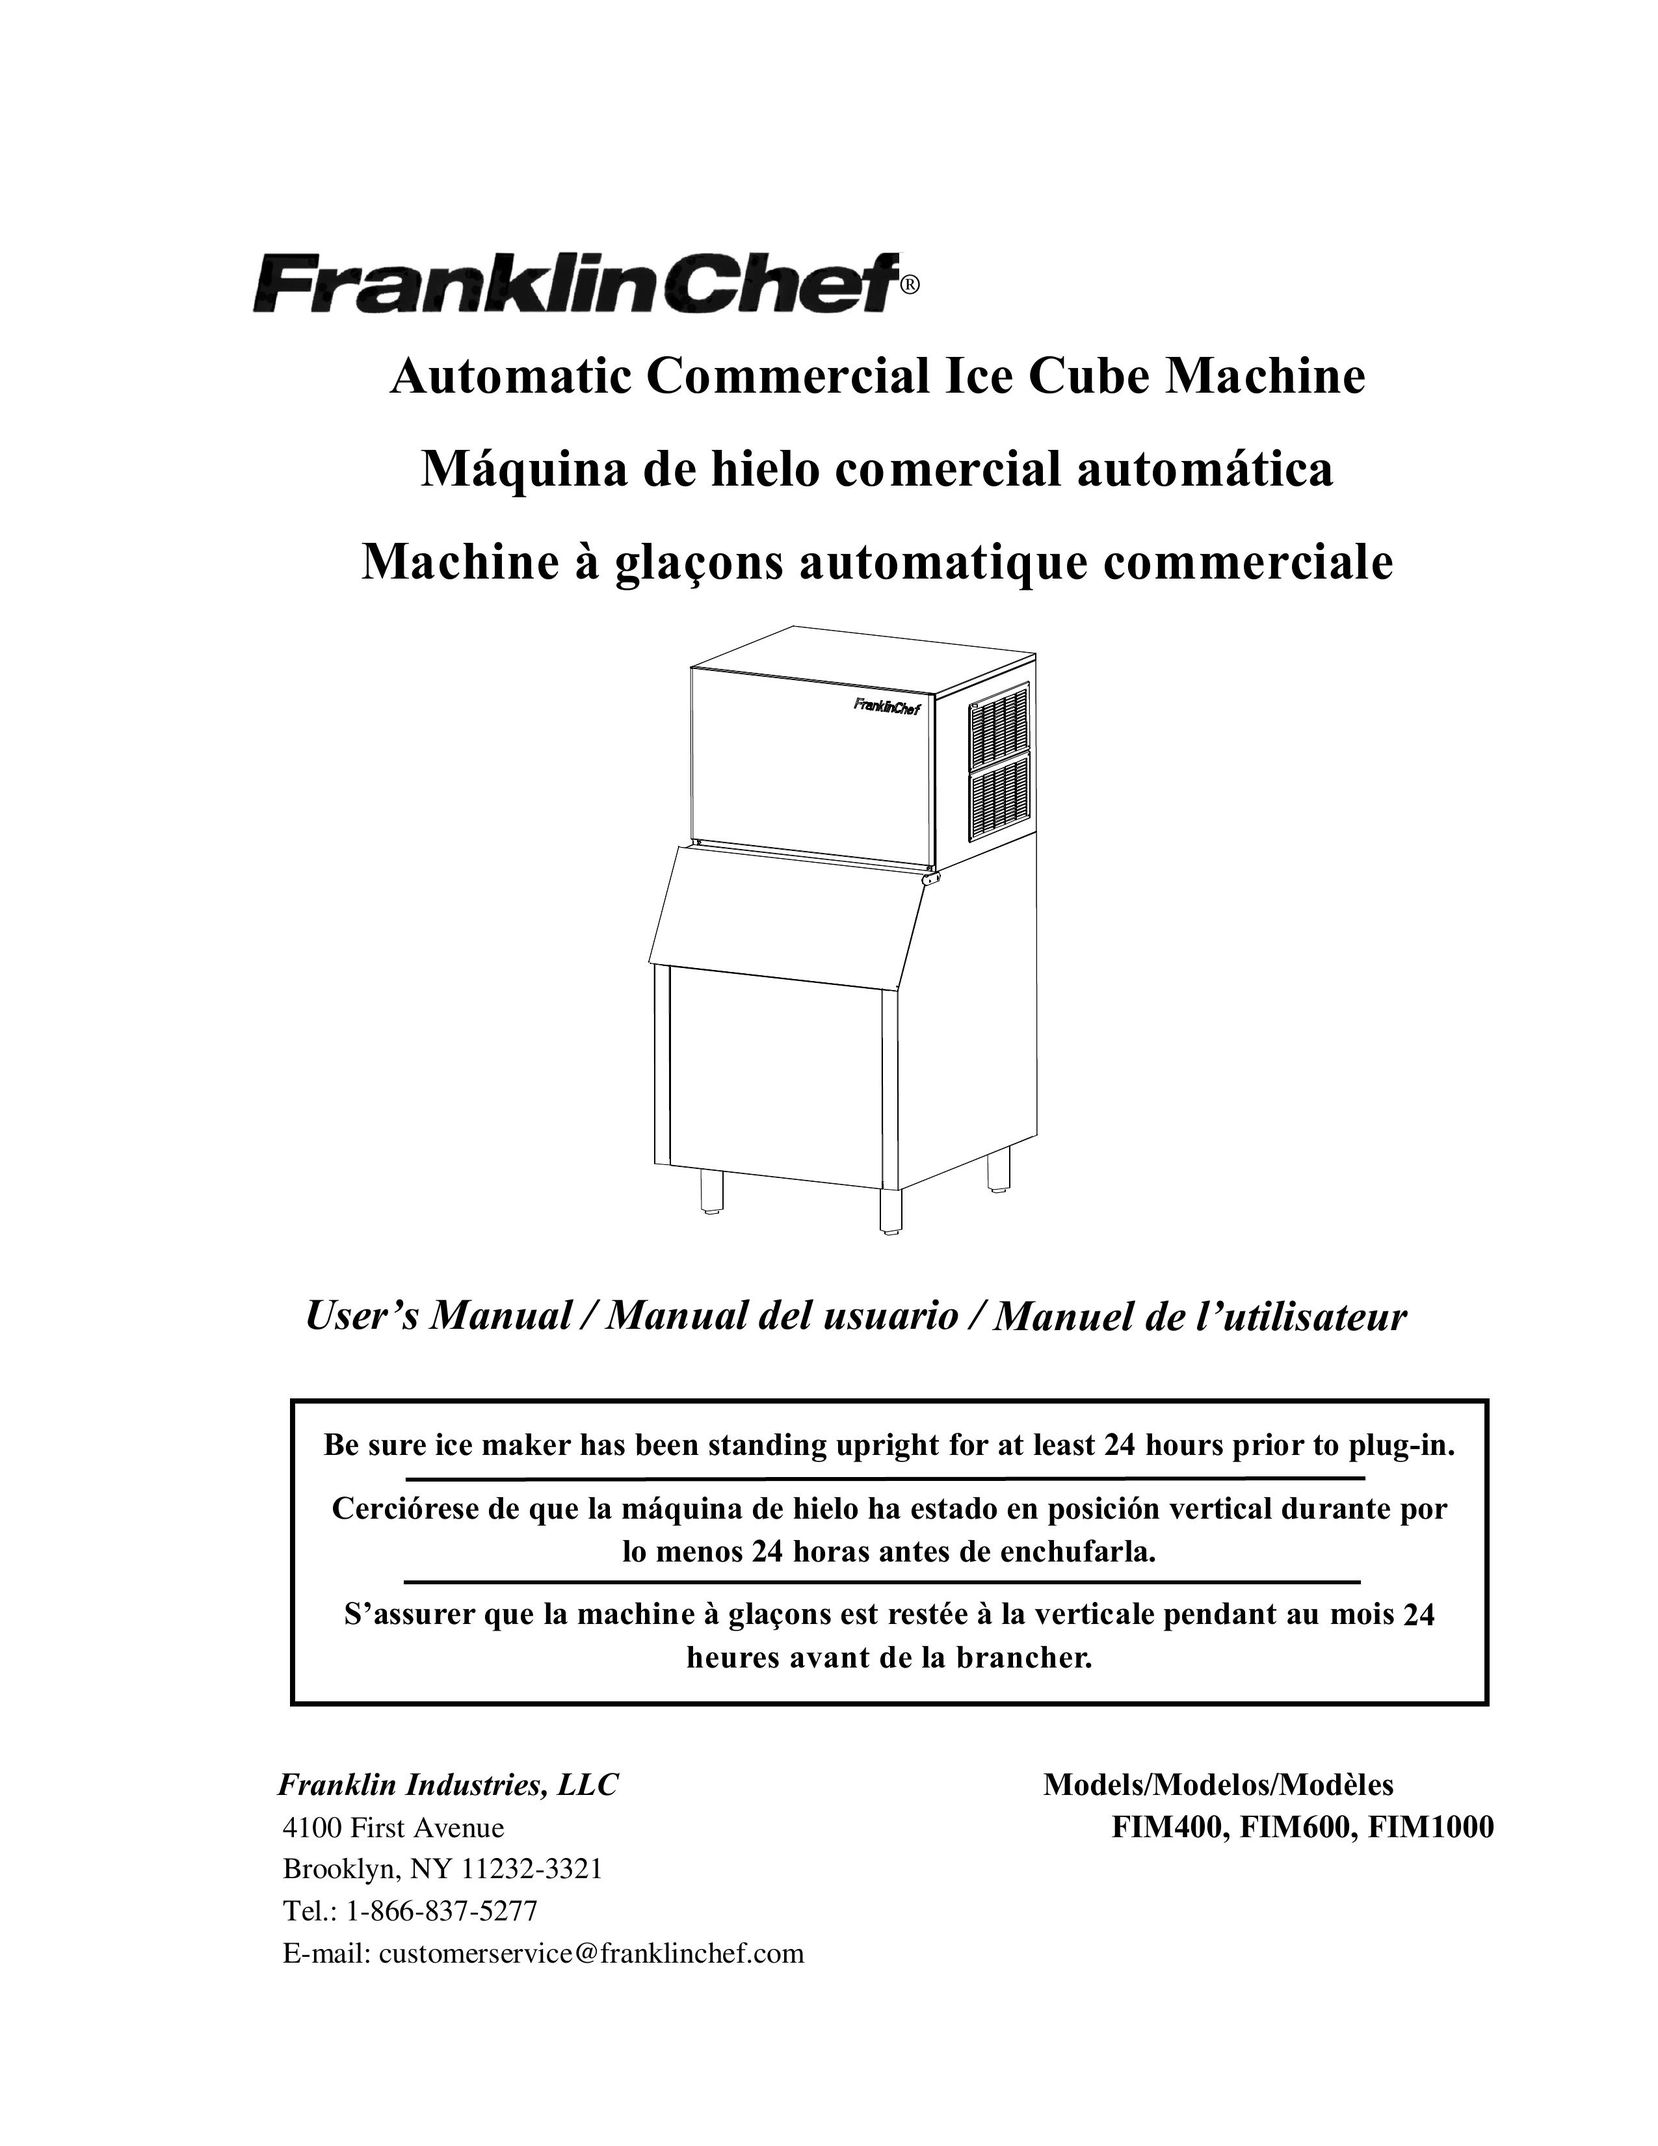 Franklin Industries, L.L.C. FIM6000 Ice Maker User Manual